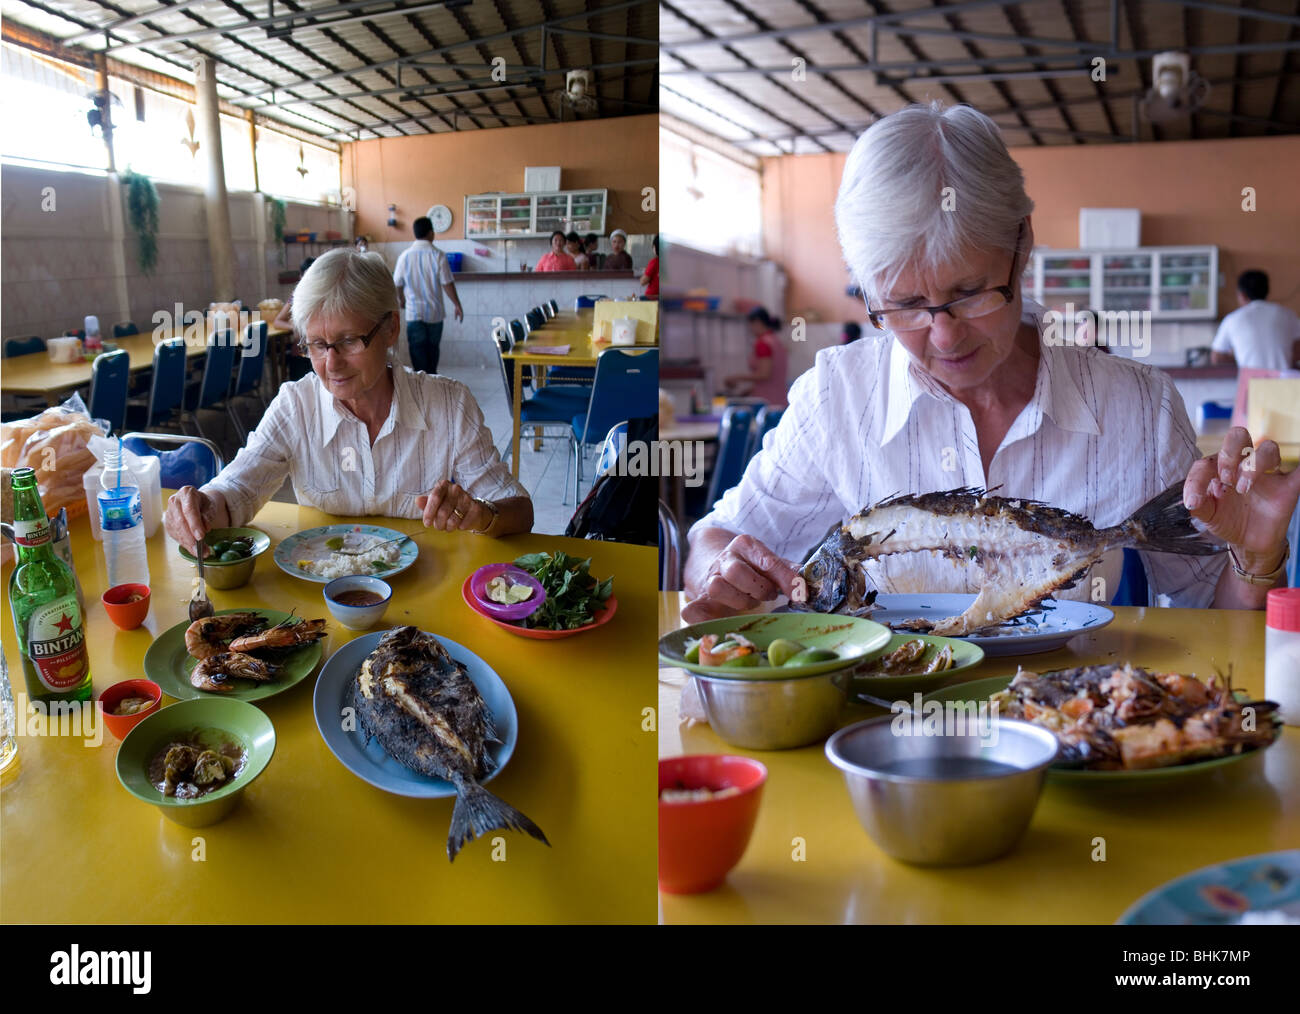 Les avec les doigts pour une expérience touristique principal (Sulawesi). Touriste s'essayant à manger du poisson avec les doigts Banque D'Images